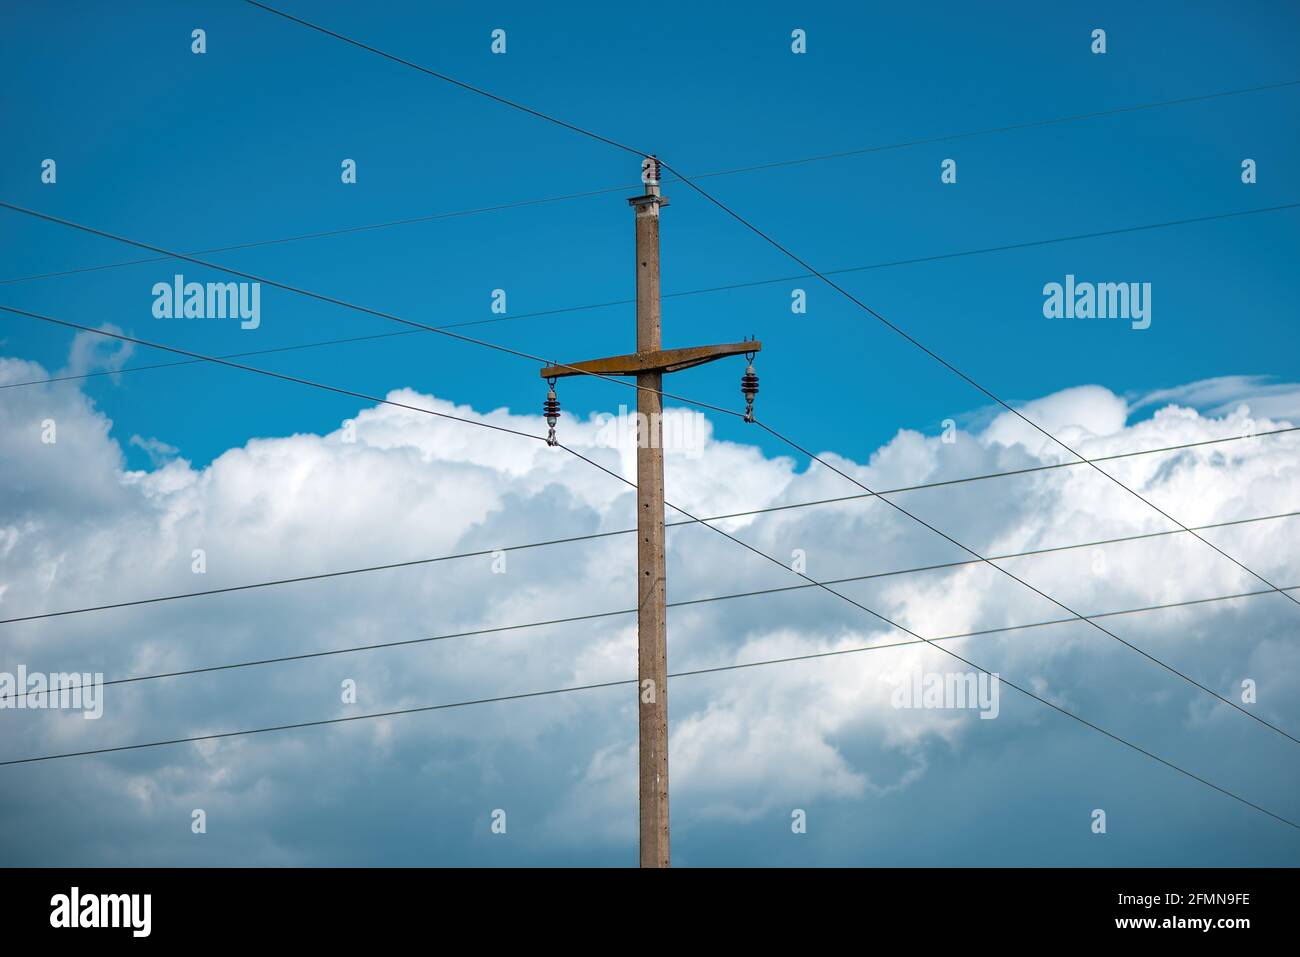 Betonstrommast mit Drähten gegen bewölkten Himmel im Hintergrund Stockfoto